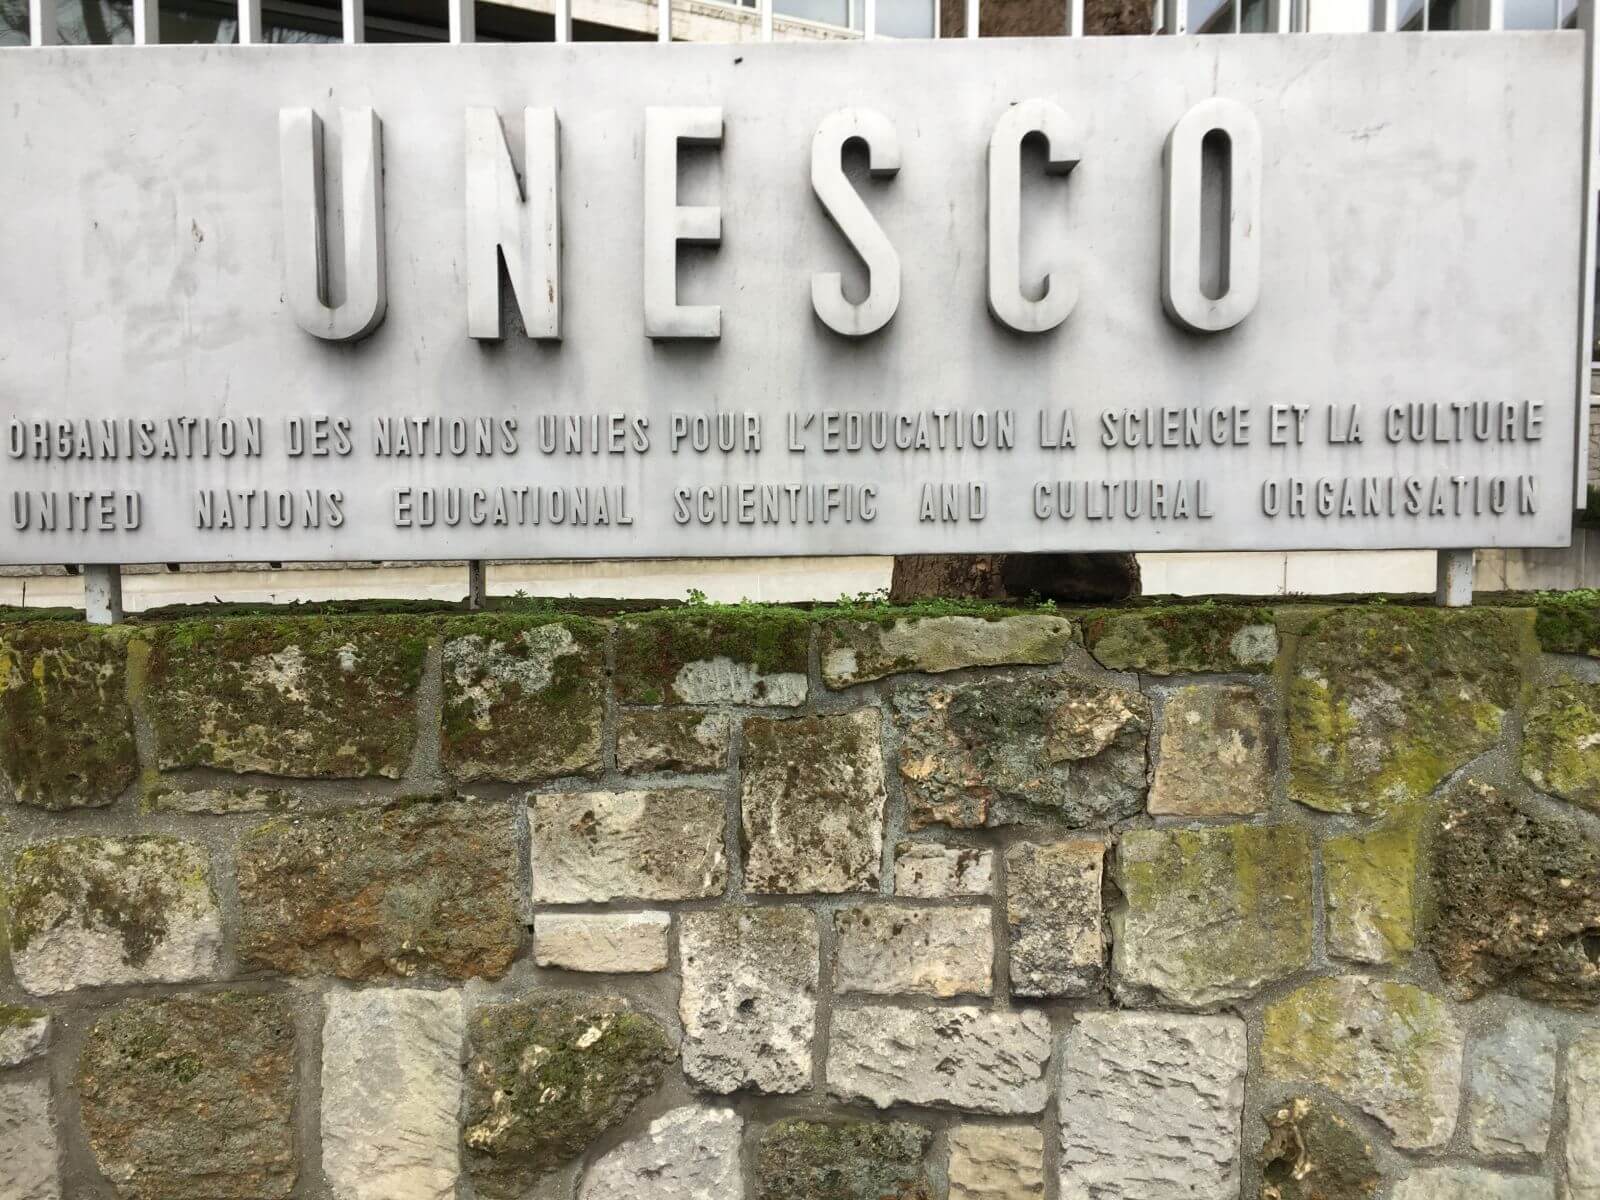 Unesco Paris